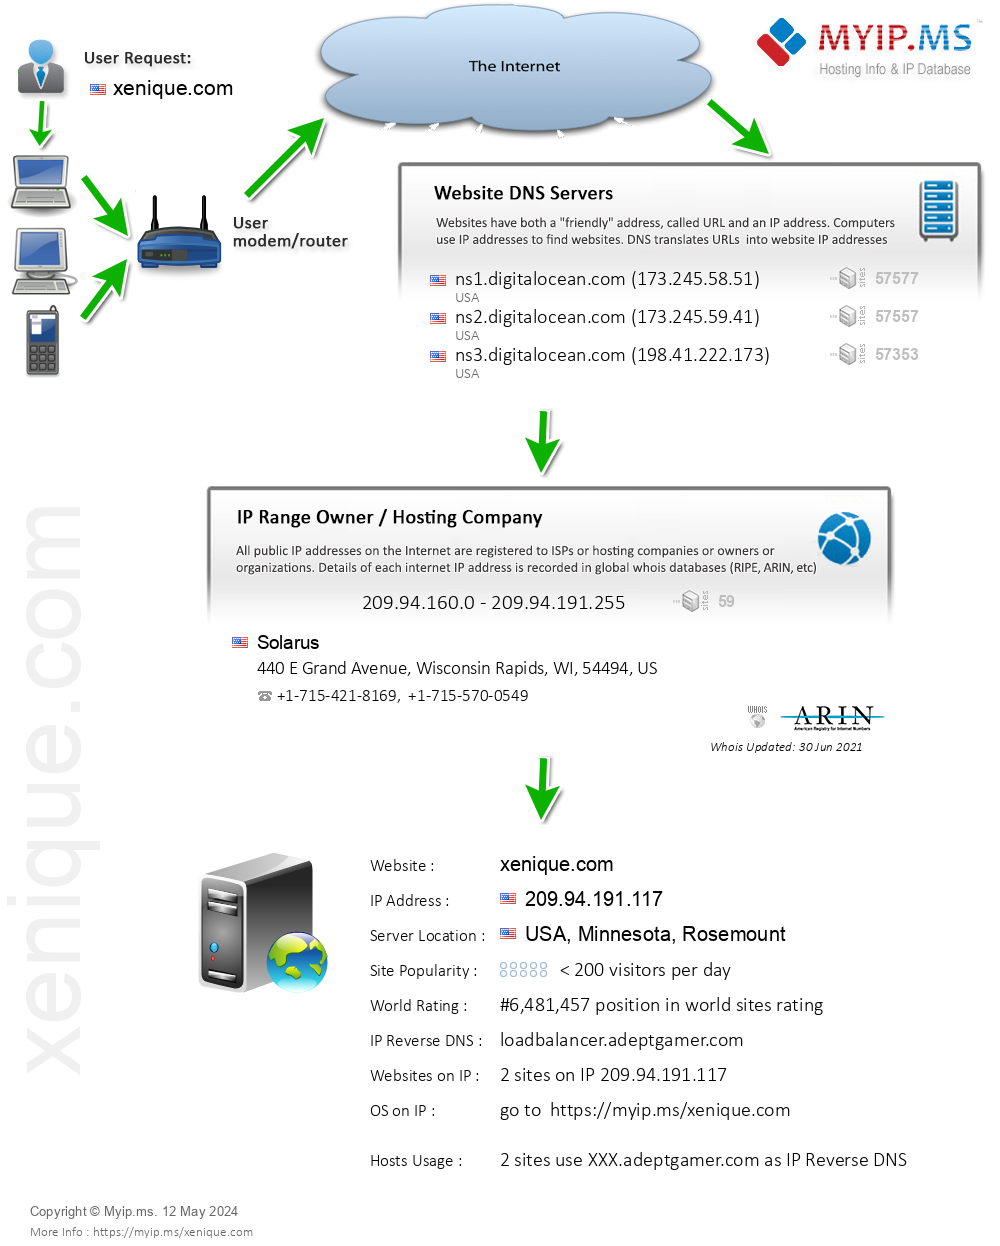 Xenique.com - Website Hosting Visual IP Diagram